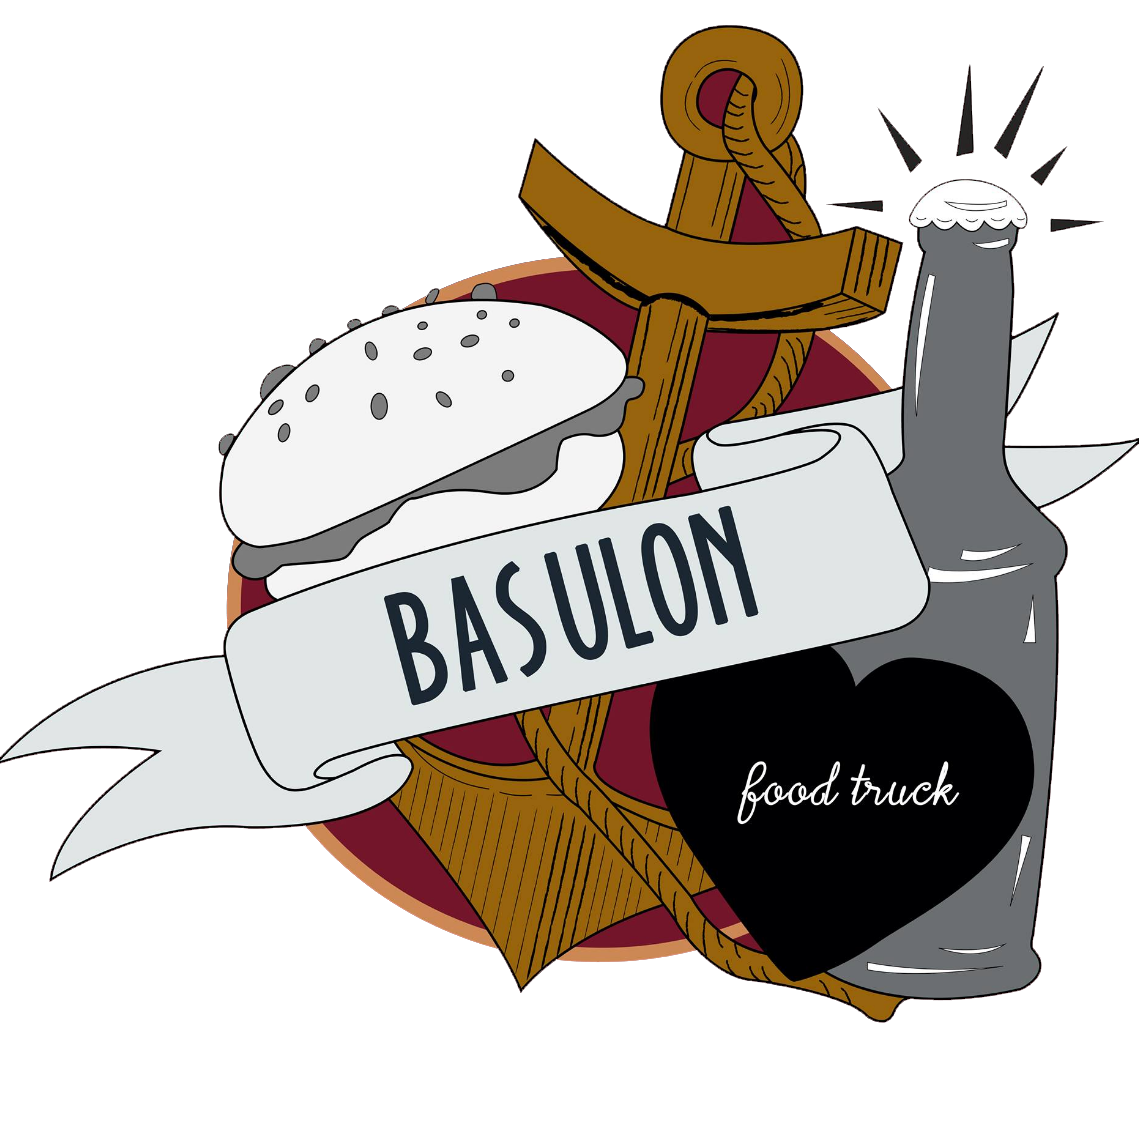 Basulon